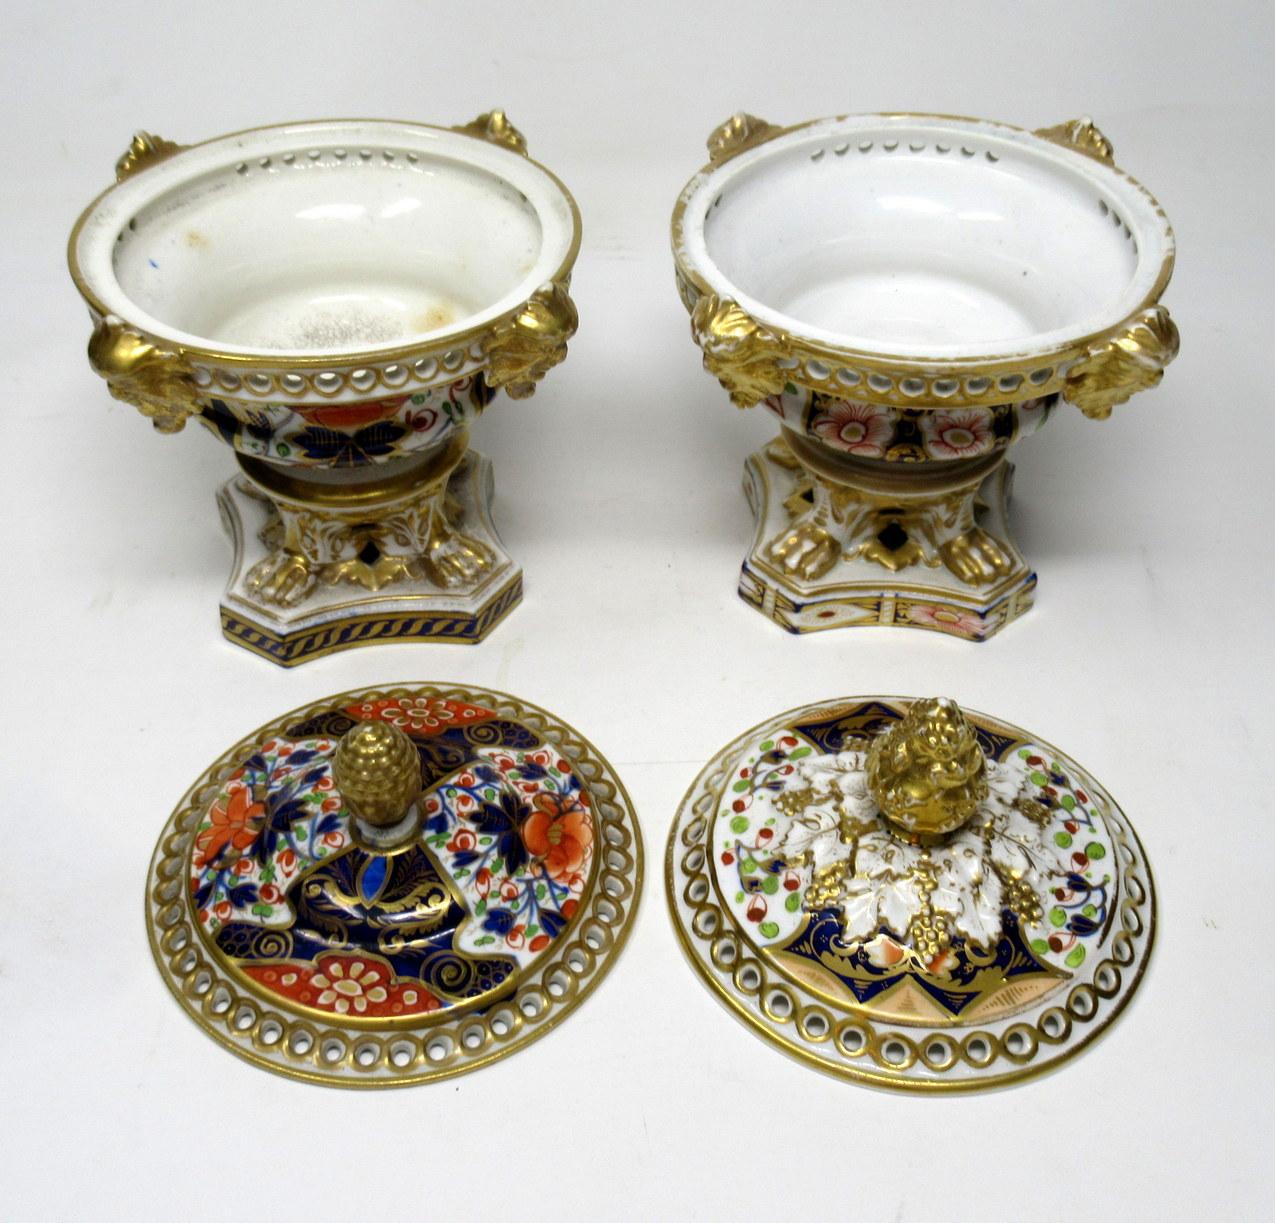 Antique Regency English Crown Derby Pair Urns Vases Pot Pourri Centerpieces 1